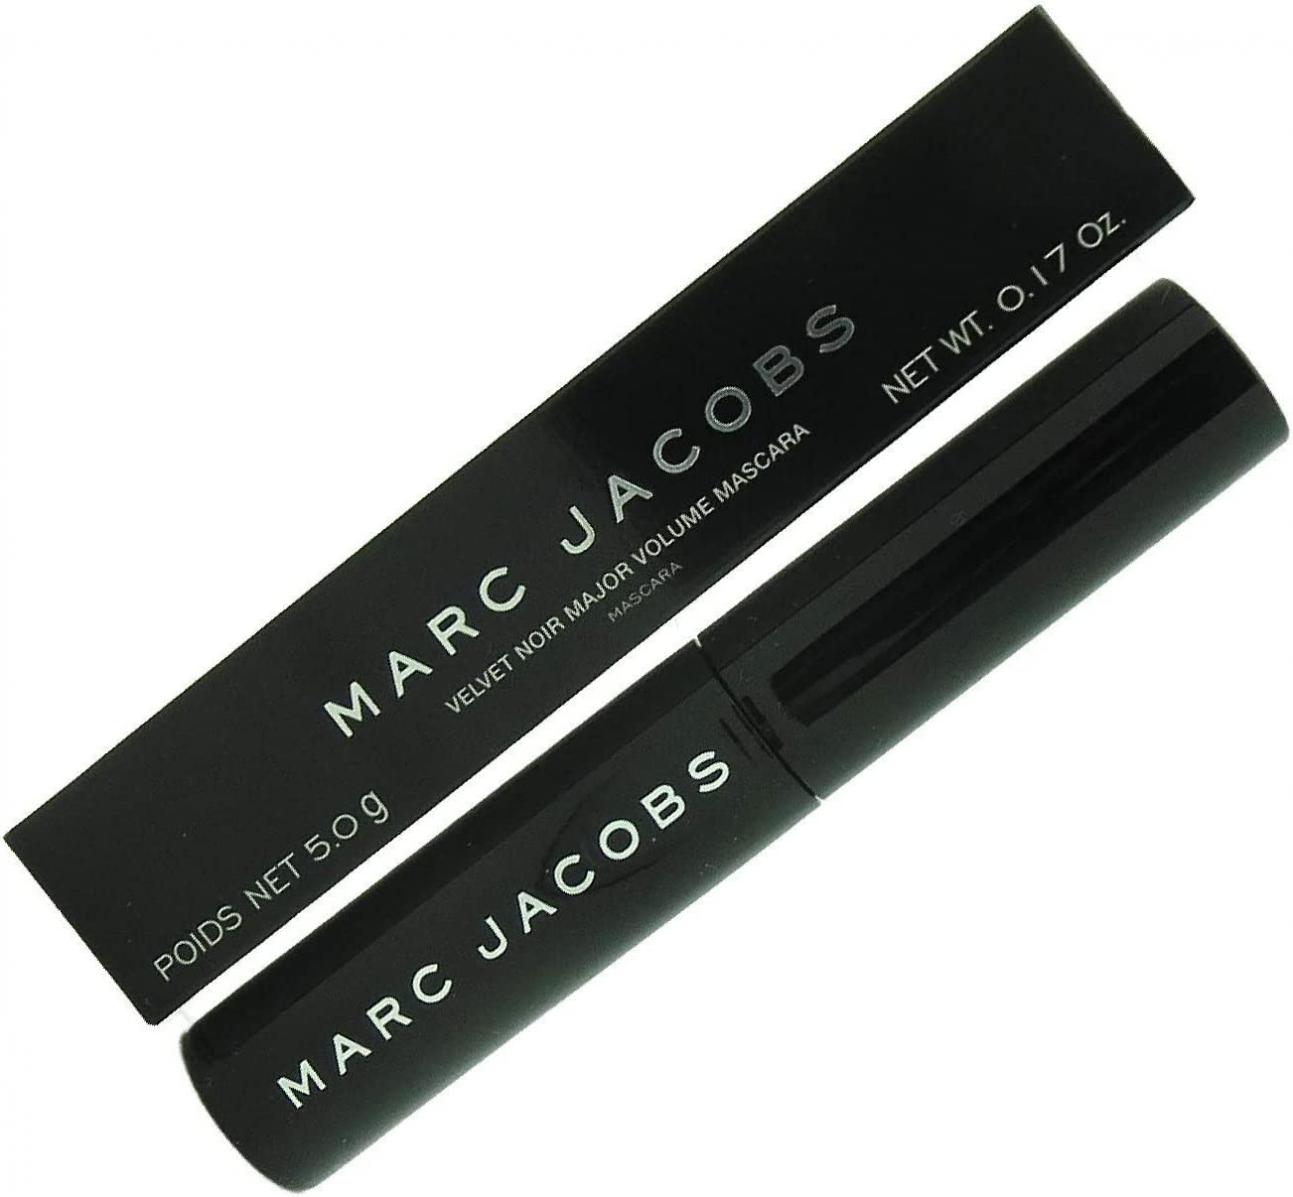 Marc Jacobs Beauty Velvet Noir Major Volume Mascara Deluxe Travel Size Mini Trial .17 Ounce